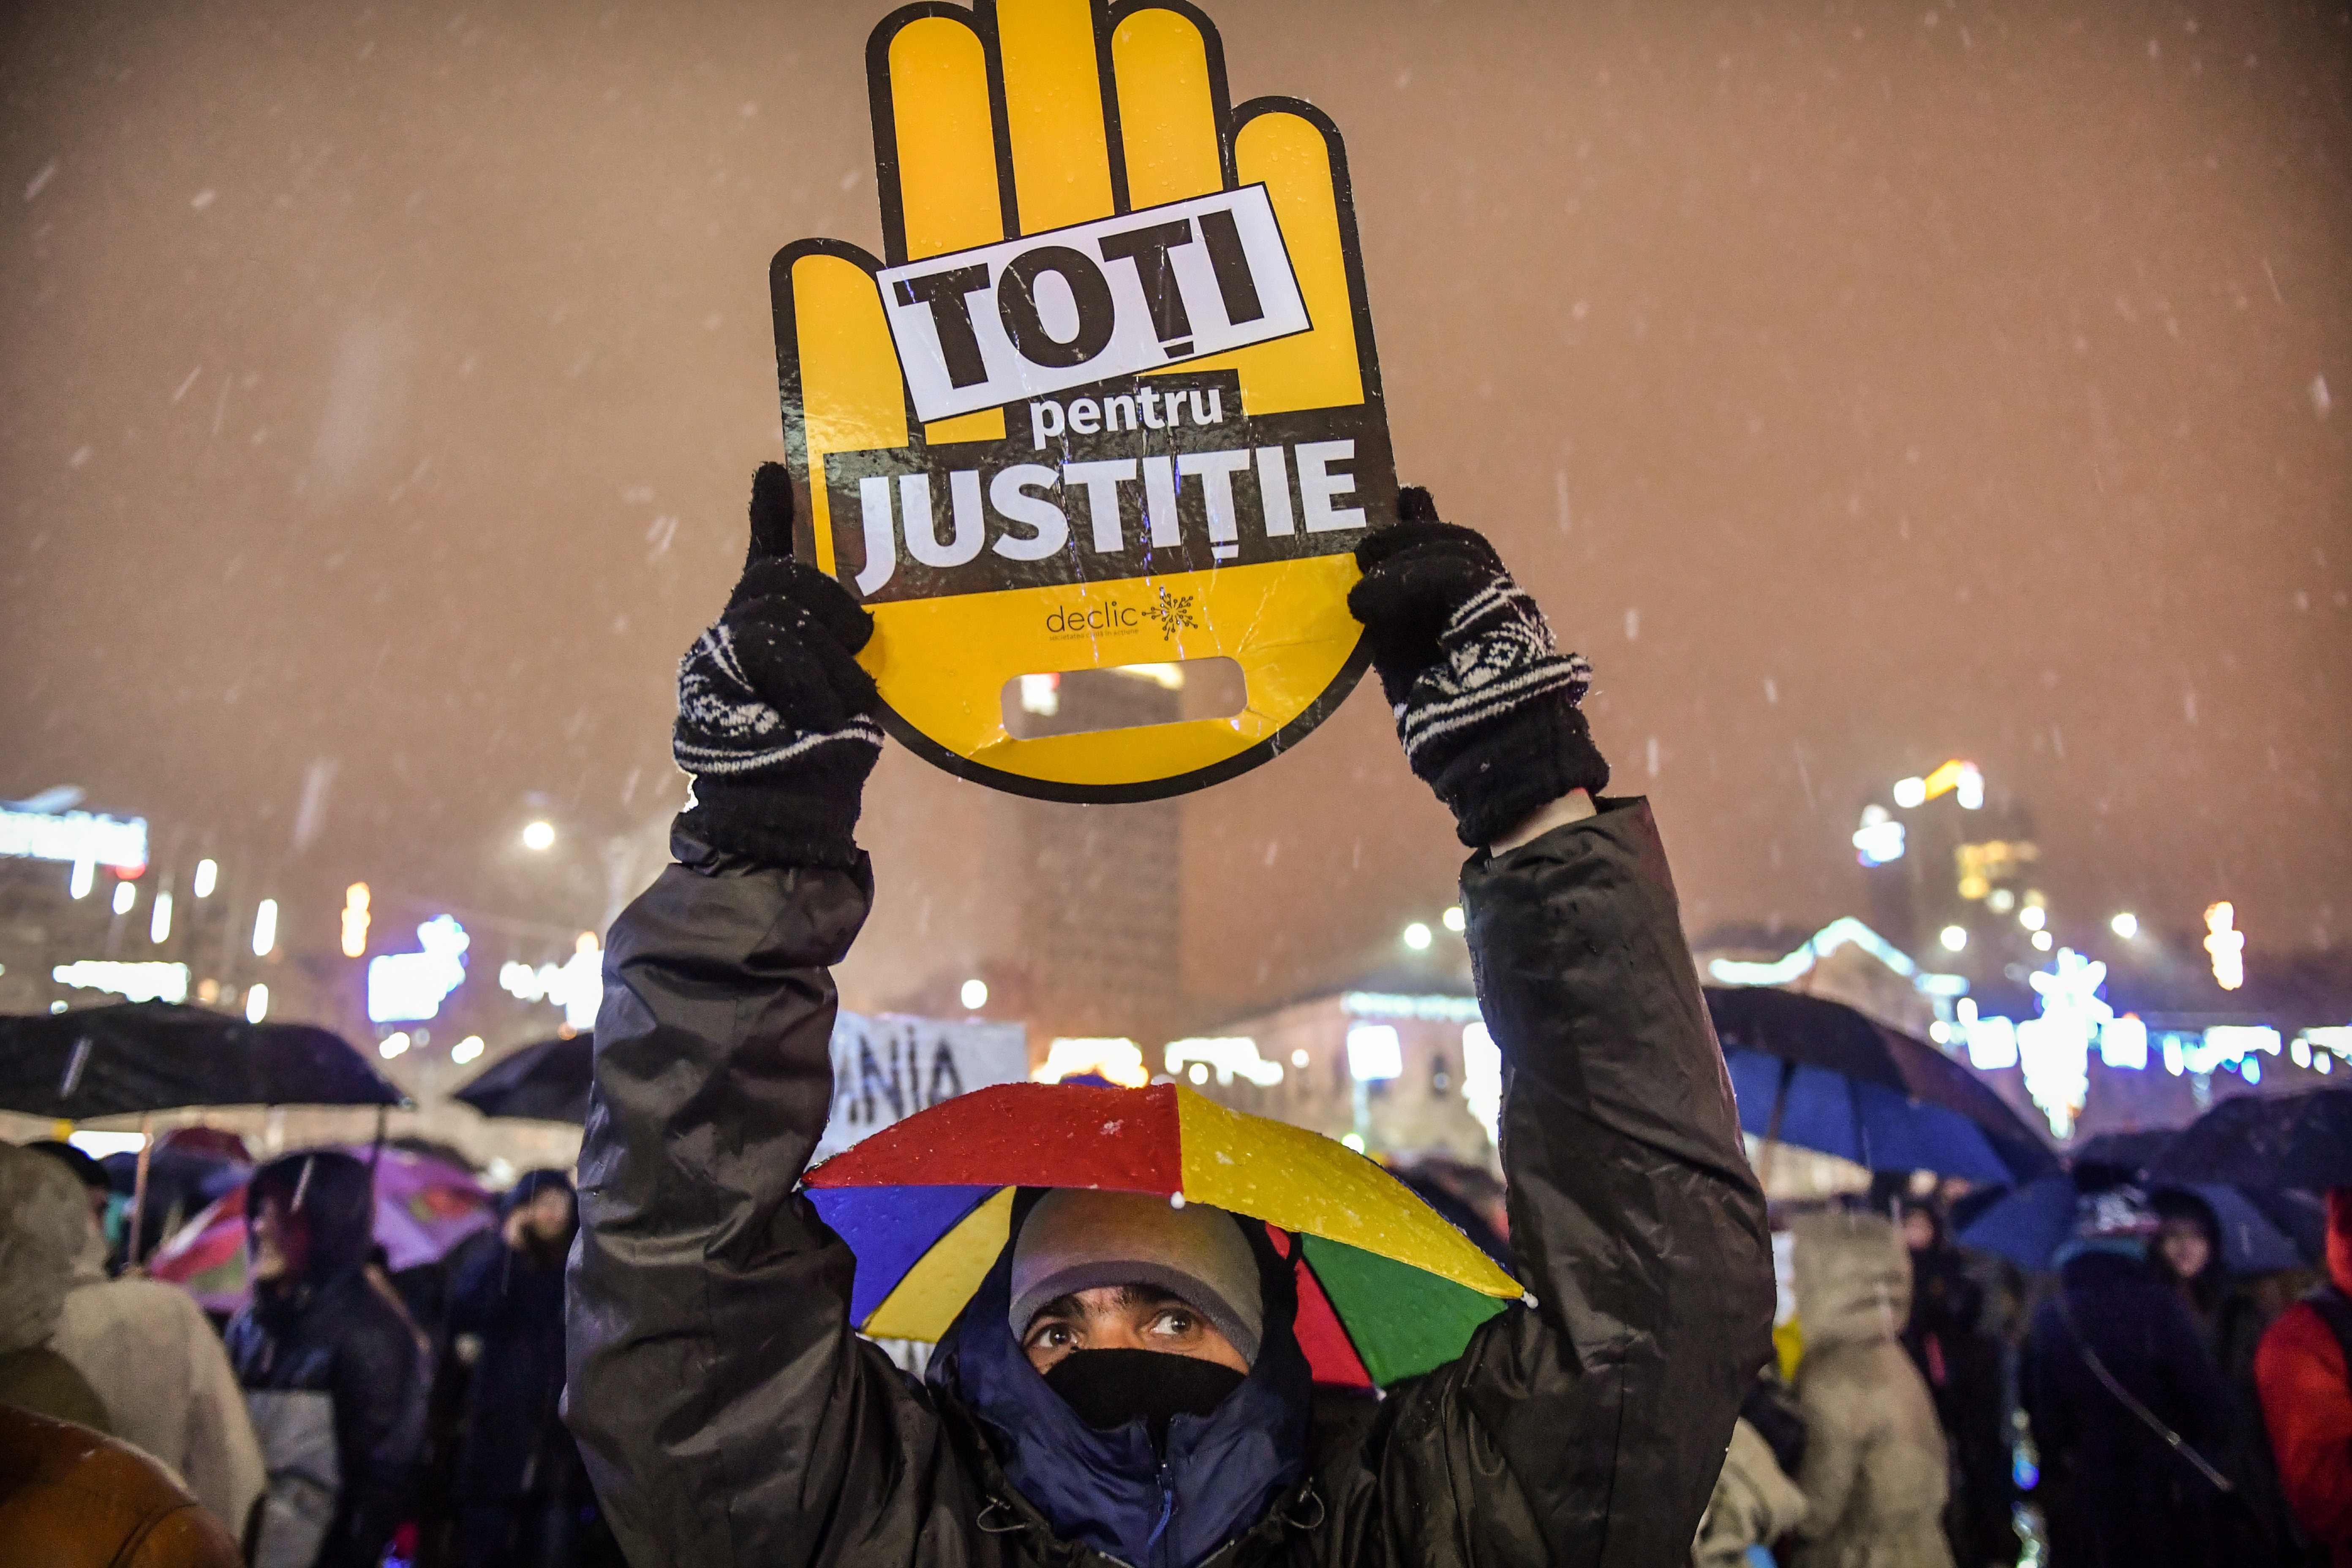 قضاةوأعضاء النيابة يتظاهرون فى رومانيا